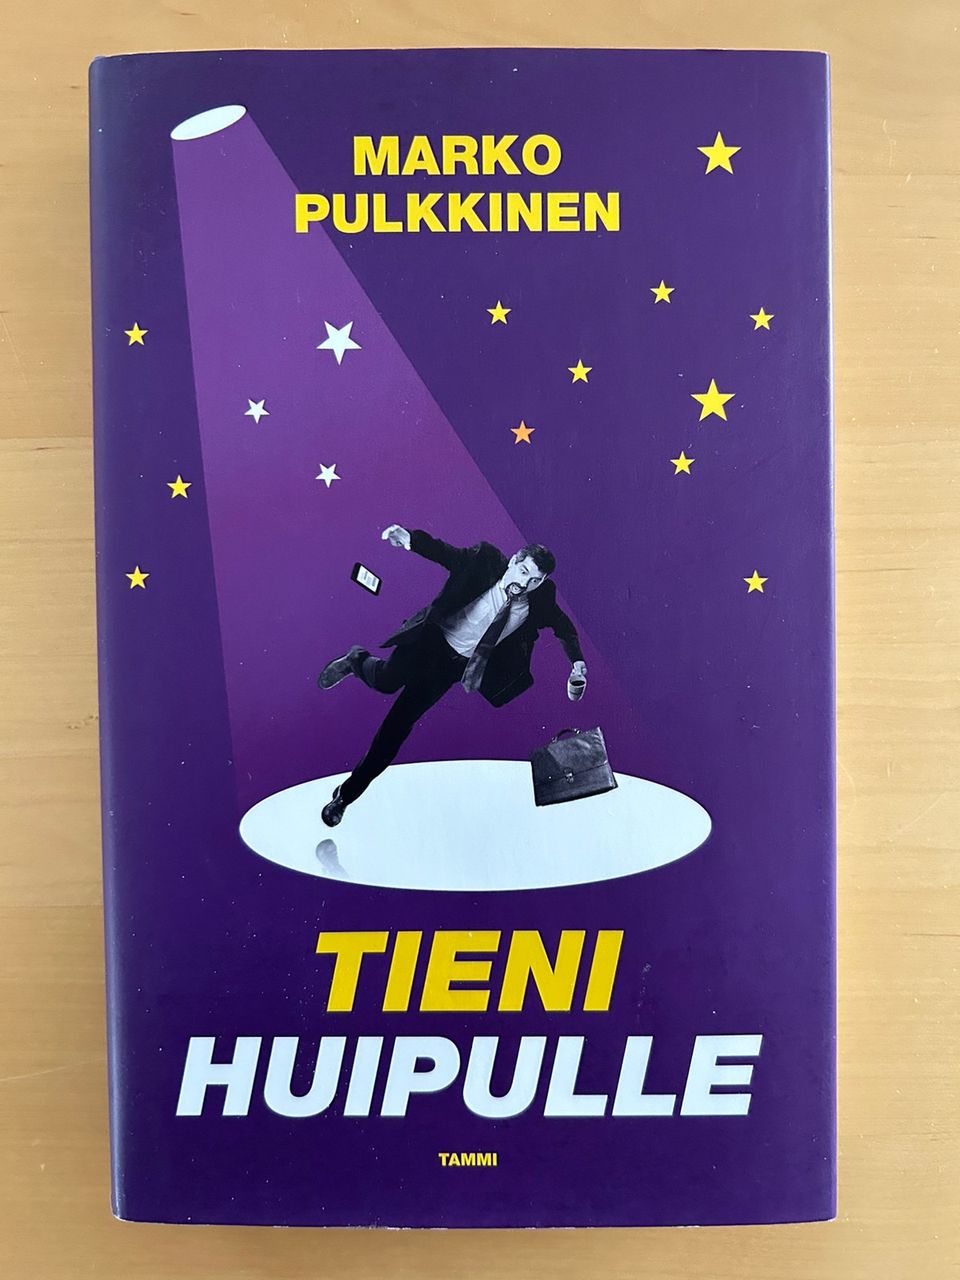 Marko Pulkkinen: Tieni huipulle